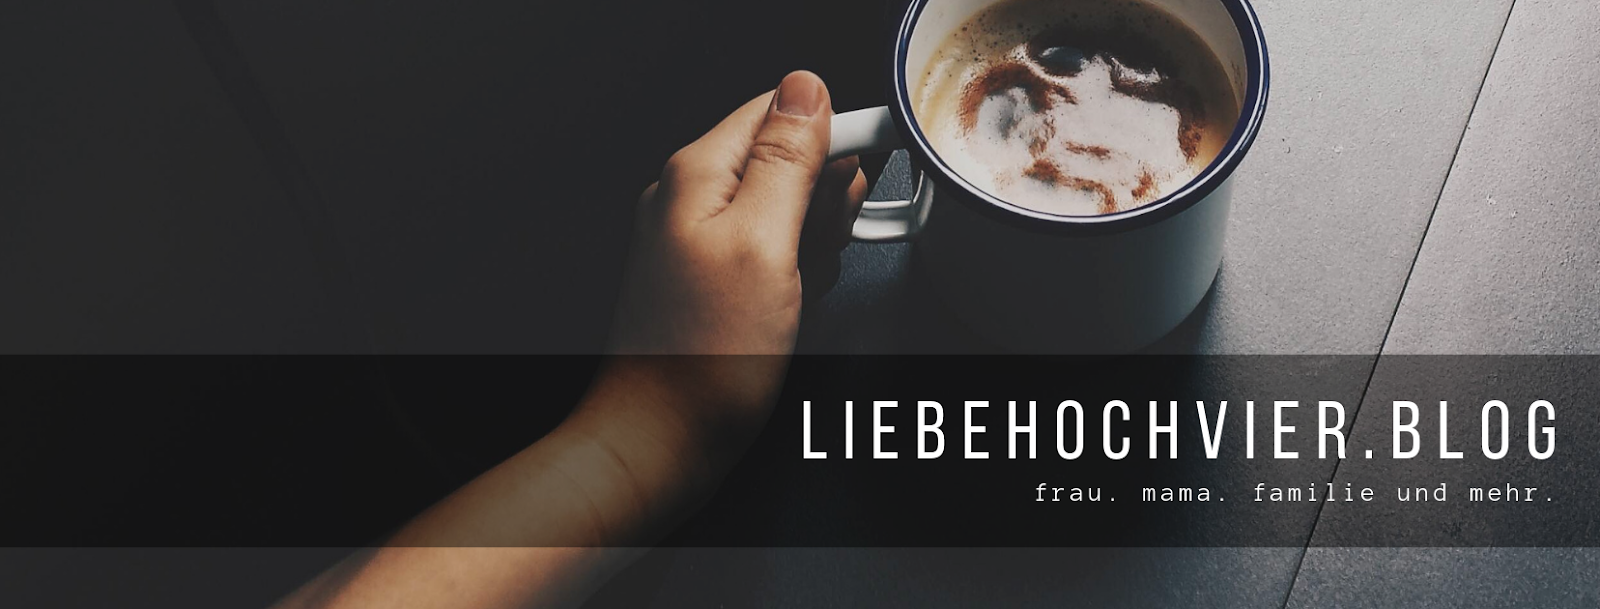 liebehochvier.blog